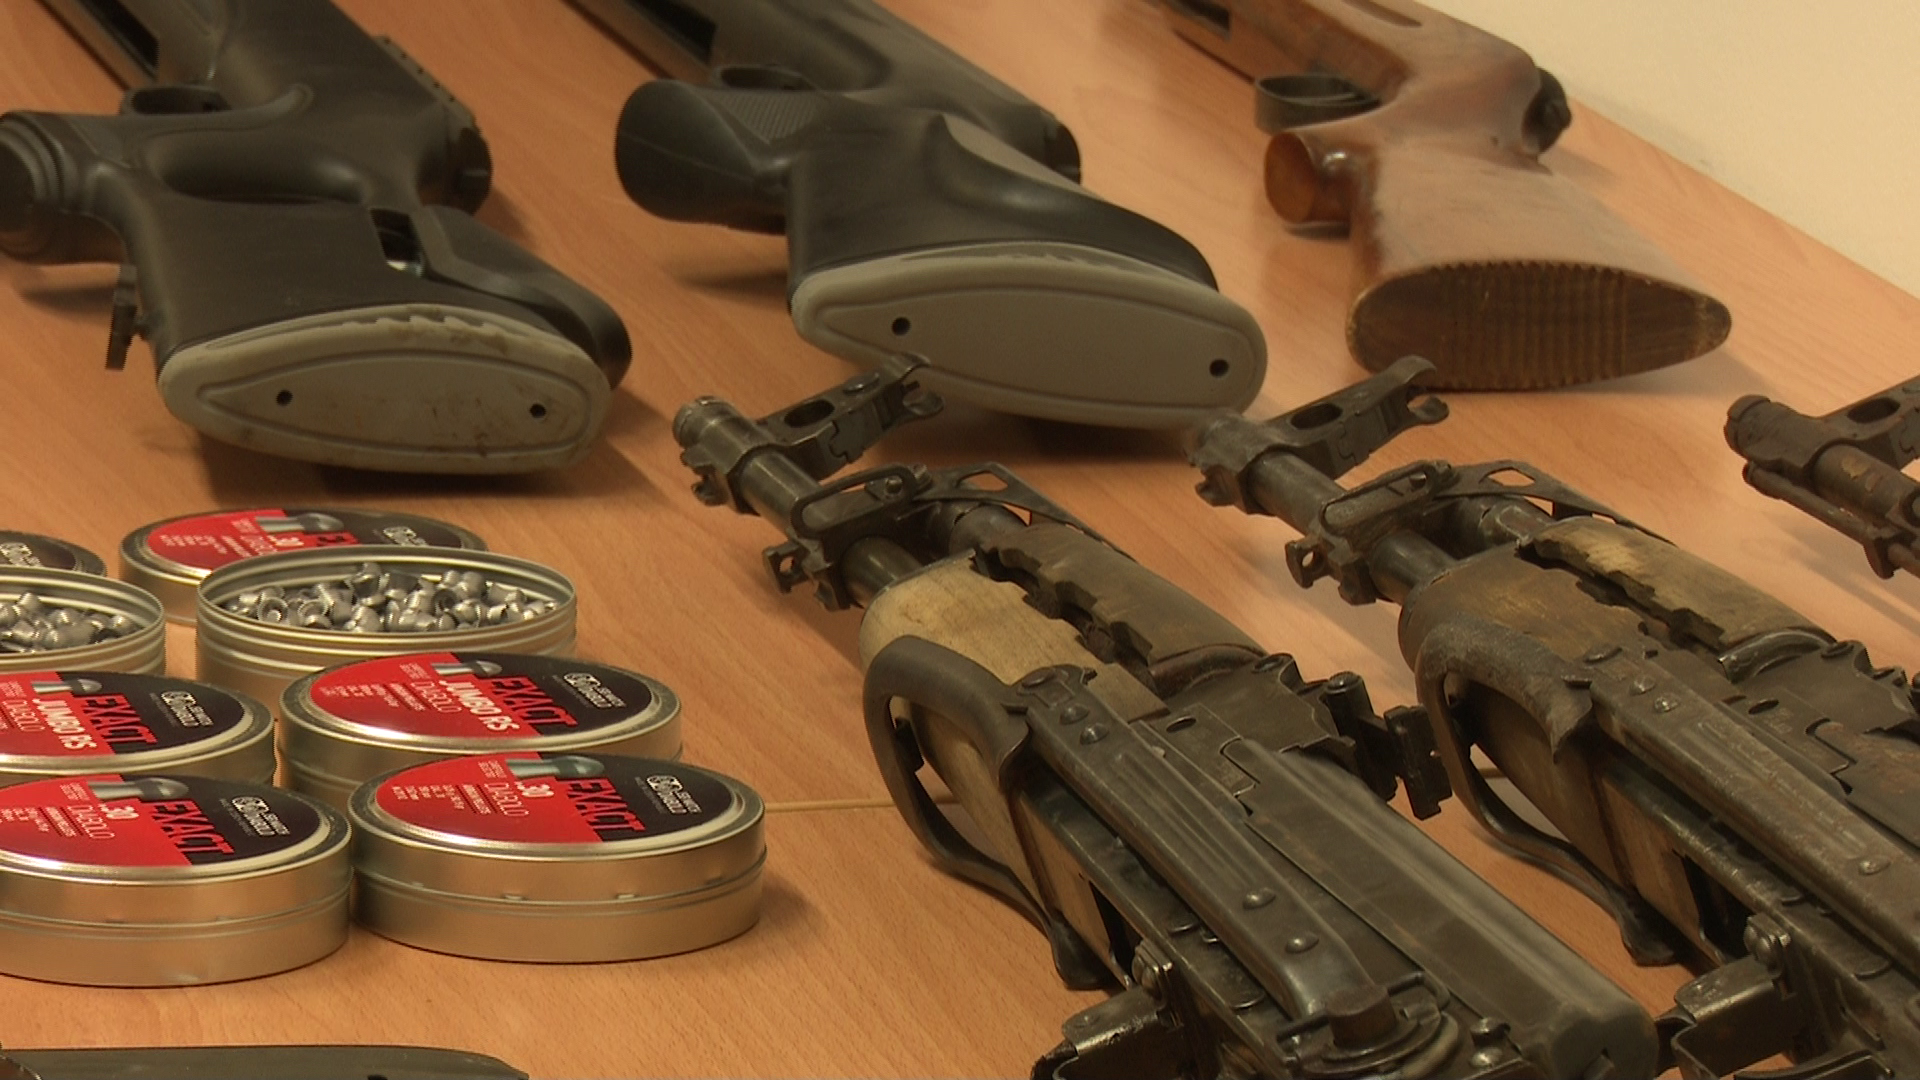 Riječka krim policija pronašla više komada oružja i streljiva